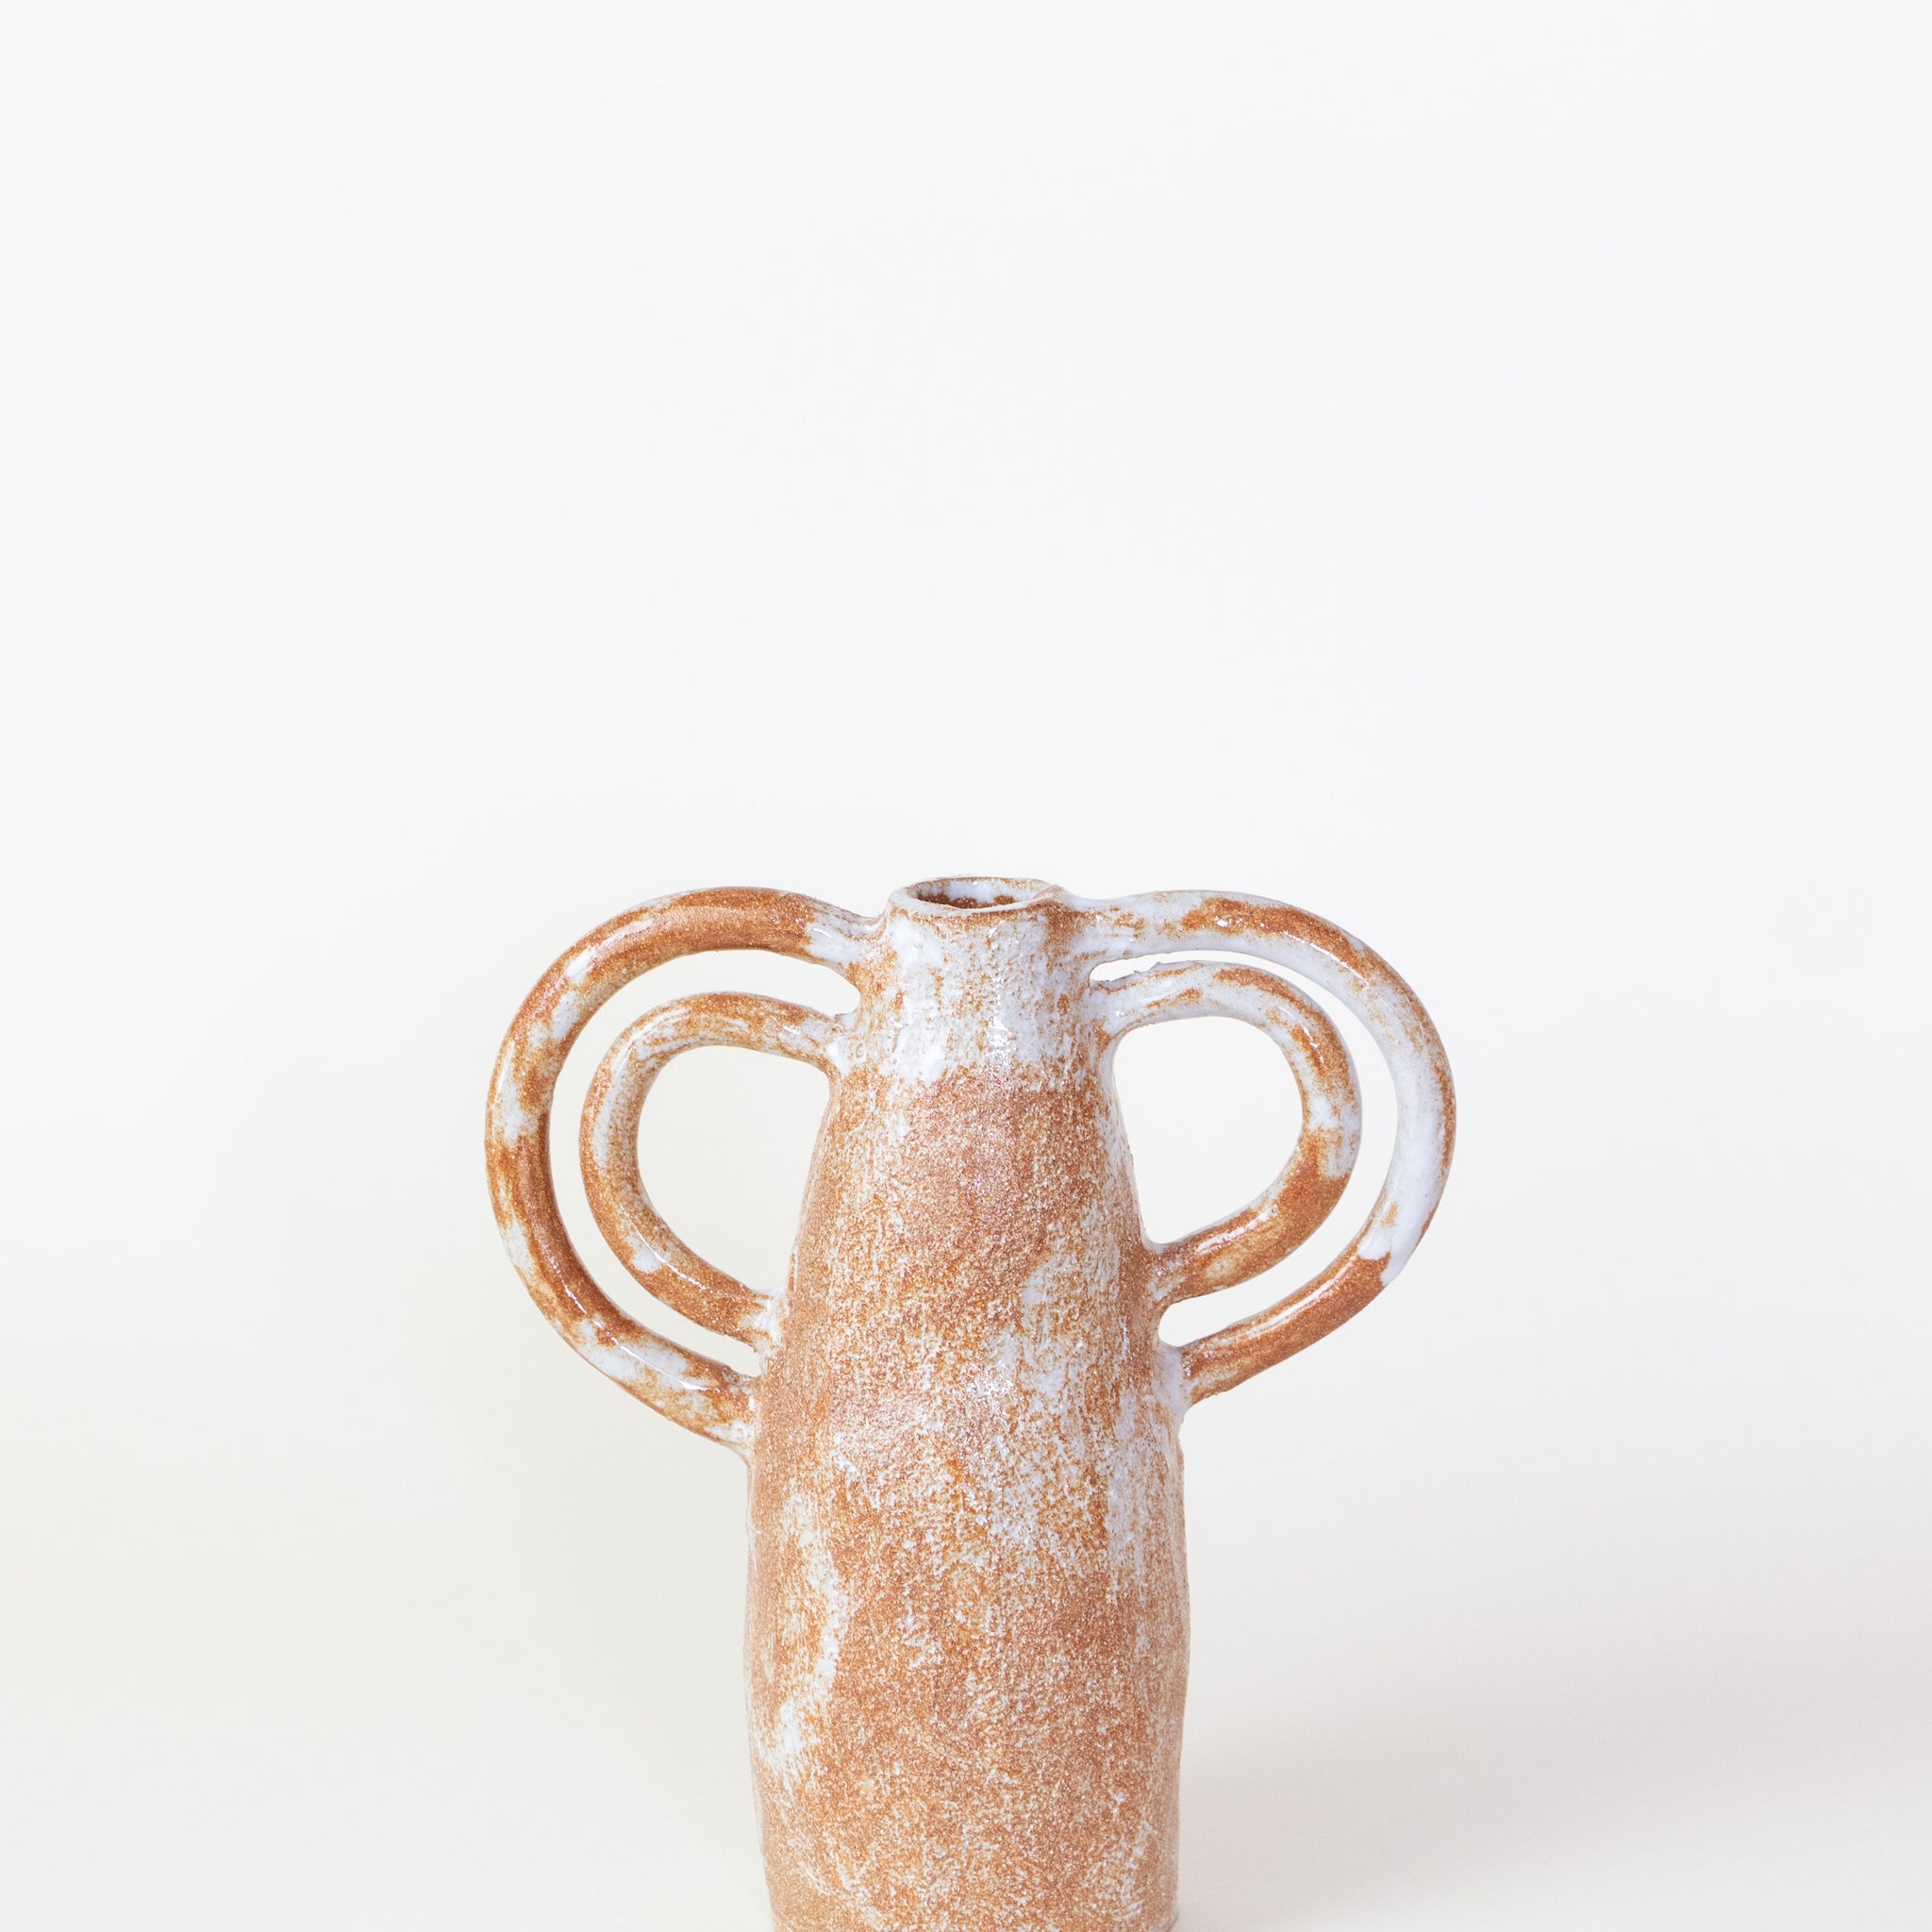 Clandestine Céramique | La Femme aux Doubles Anses in Sand + White Vase